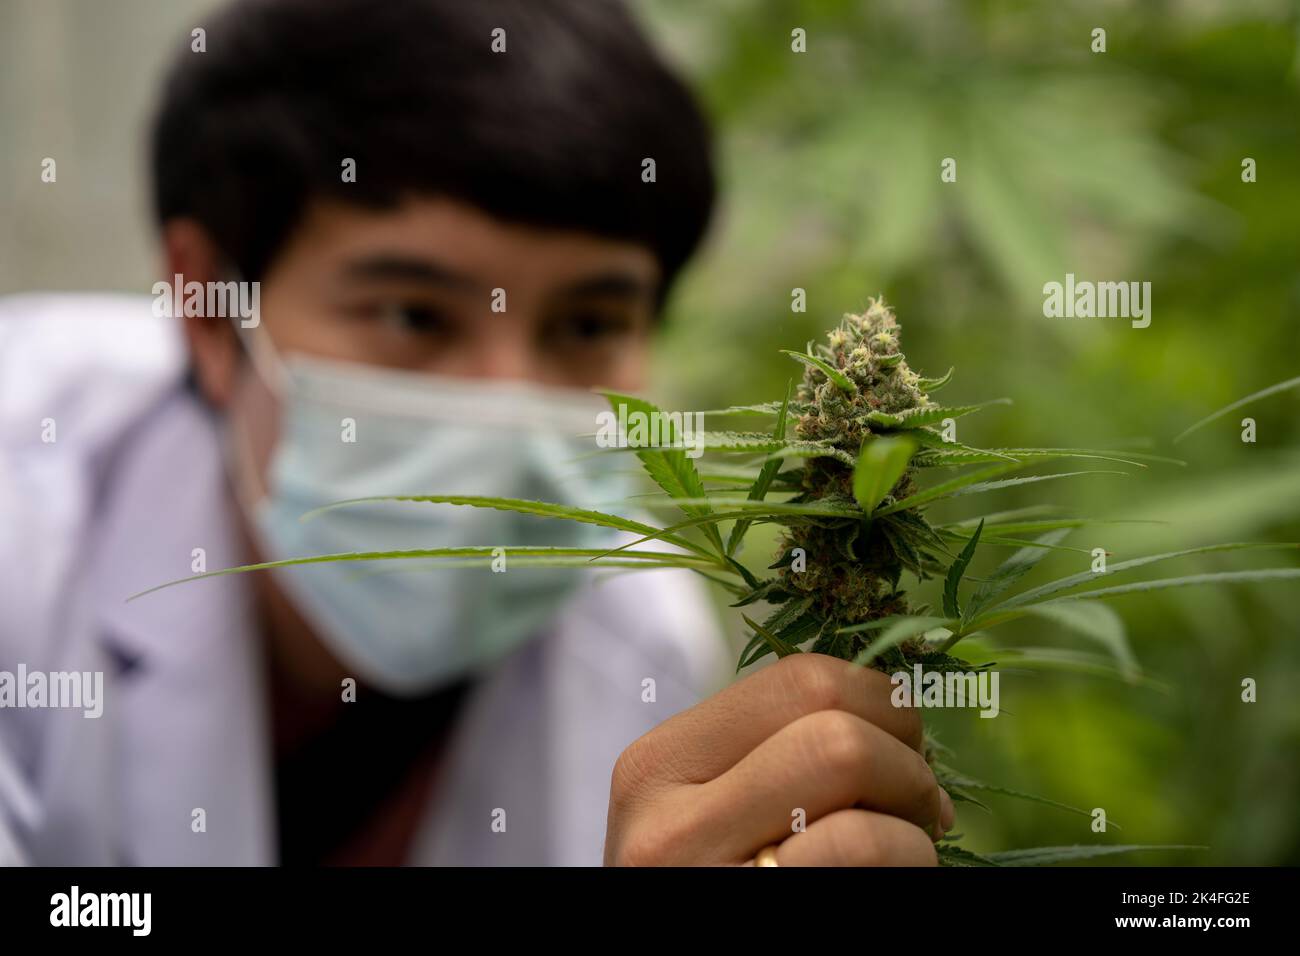 Wissenschaftler mit Maske überprüft Hanfpflanzen in einem Gewächshaus. Konzept der pflanzlichen Alternativmedizin, cbd-Öl, Pharmazeptische Industrie Stockfoto